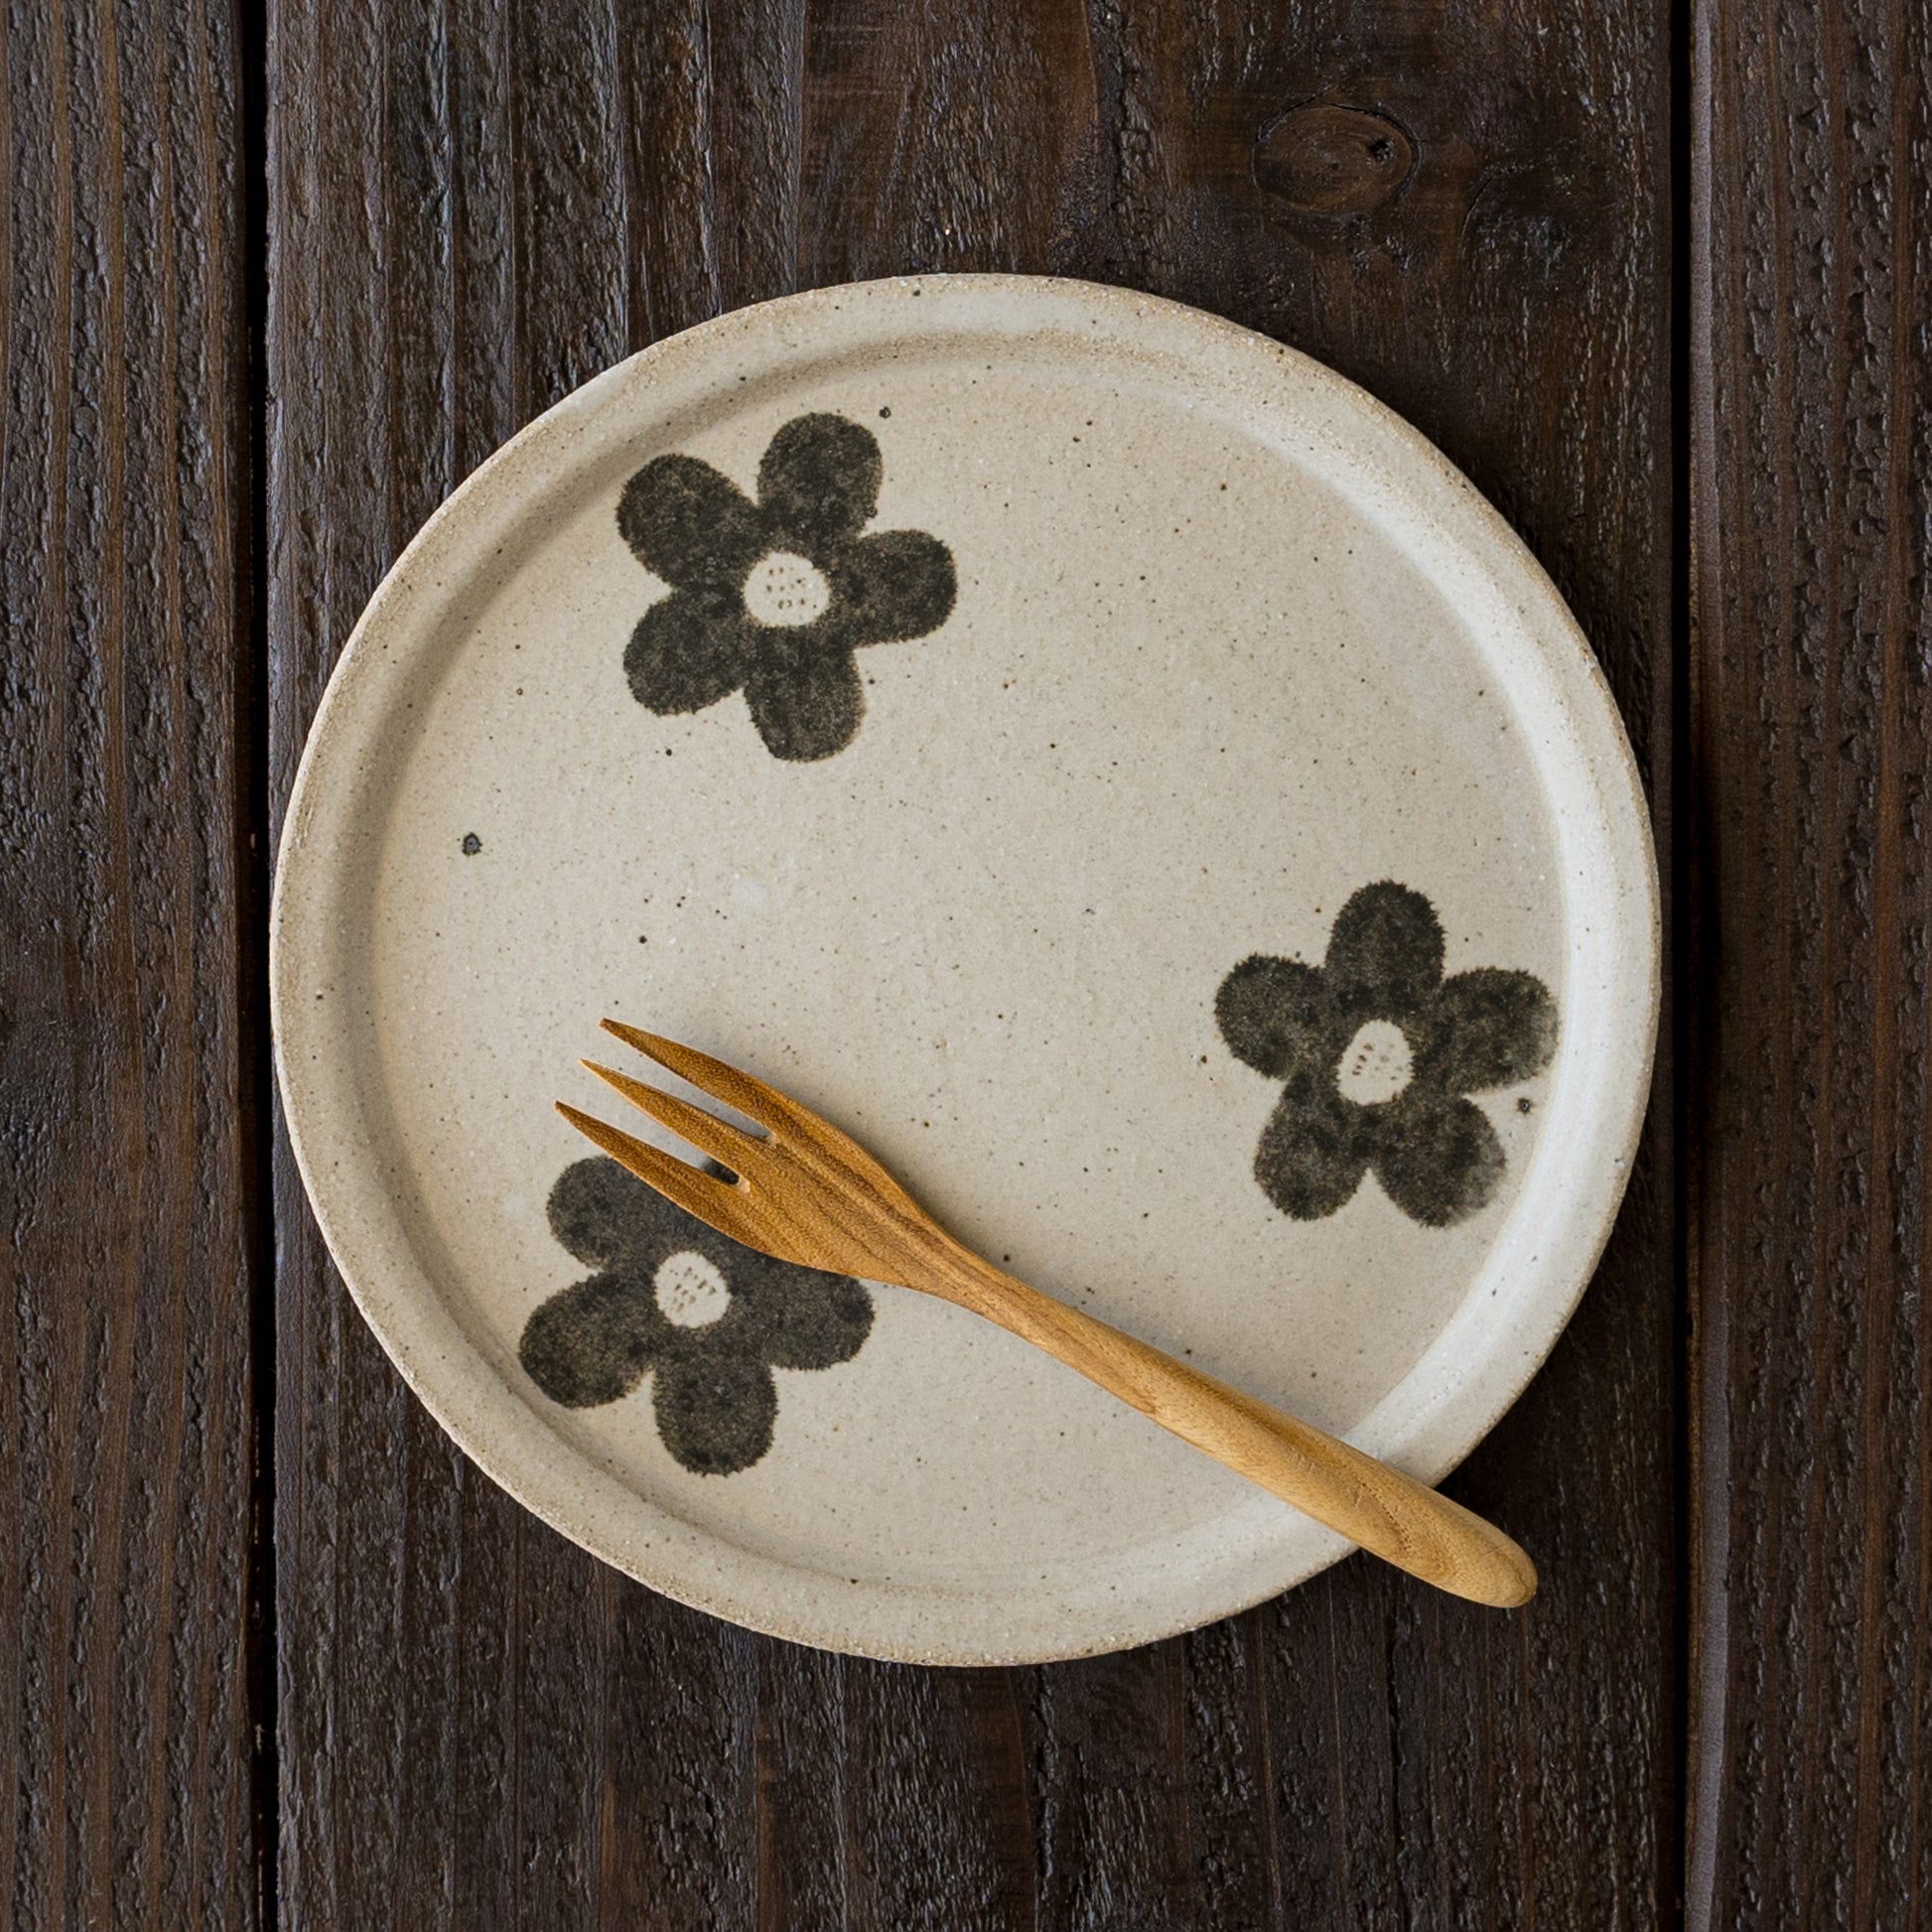 ホットケーキやオムライスが可愛く映える岡村朝子さんのお花模様の丸皿